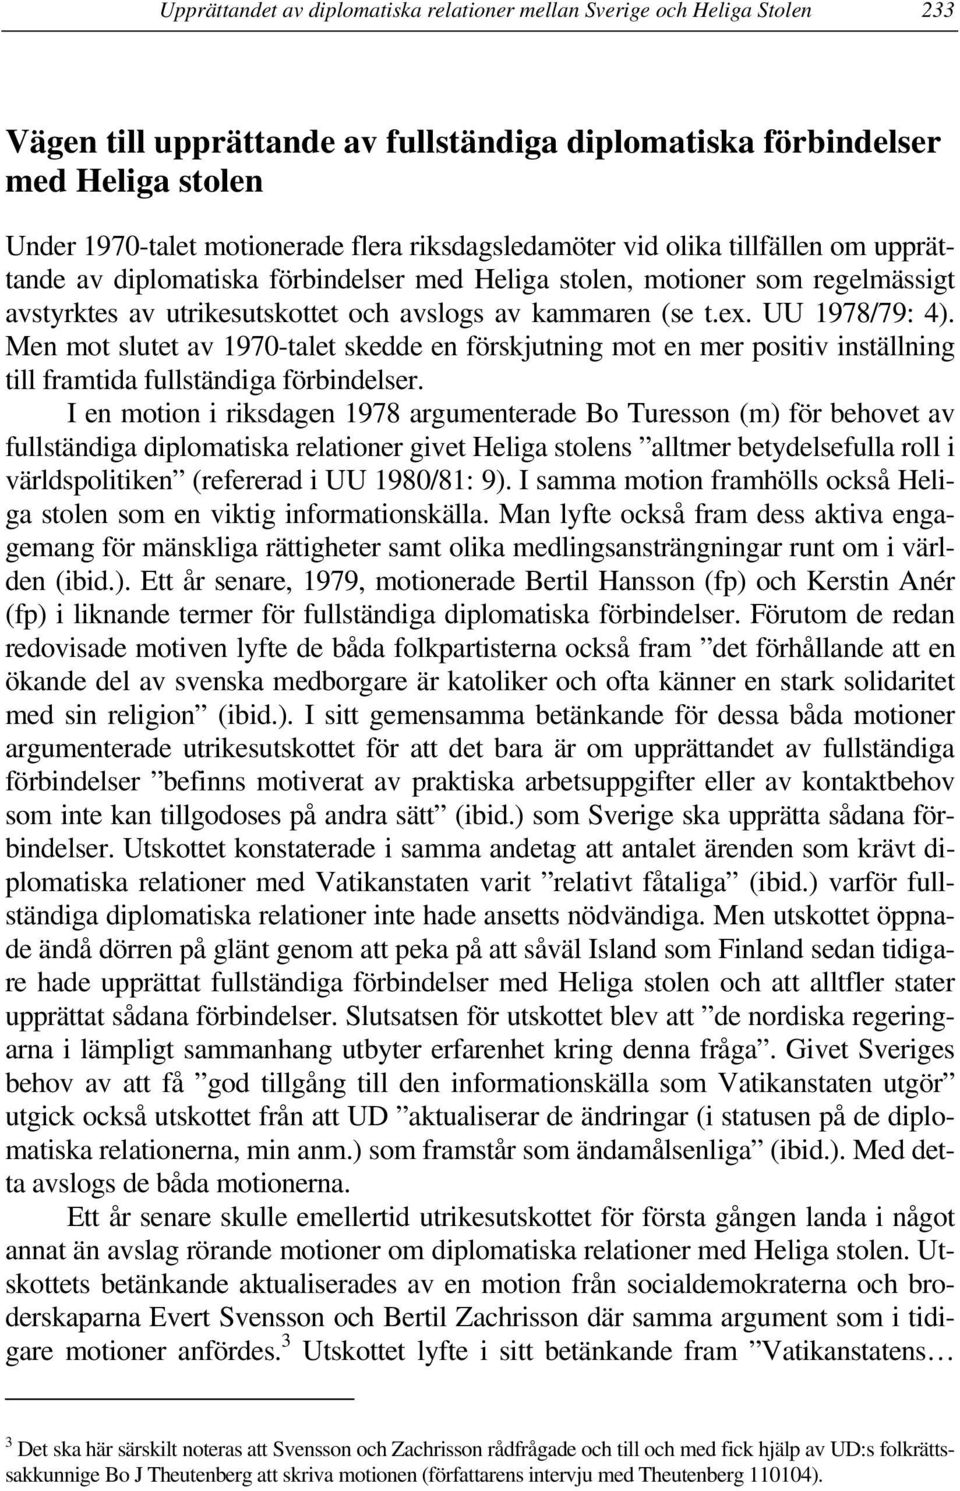 Upprättandet av diplomatiska relationer mellan Sverige och Heliga Stolen  ett flerdimensionellt utrikespolitiskt beslut - PDF Gratis nedladdning